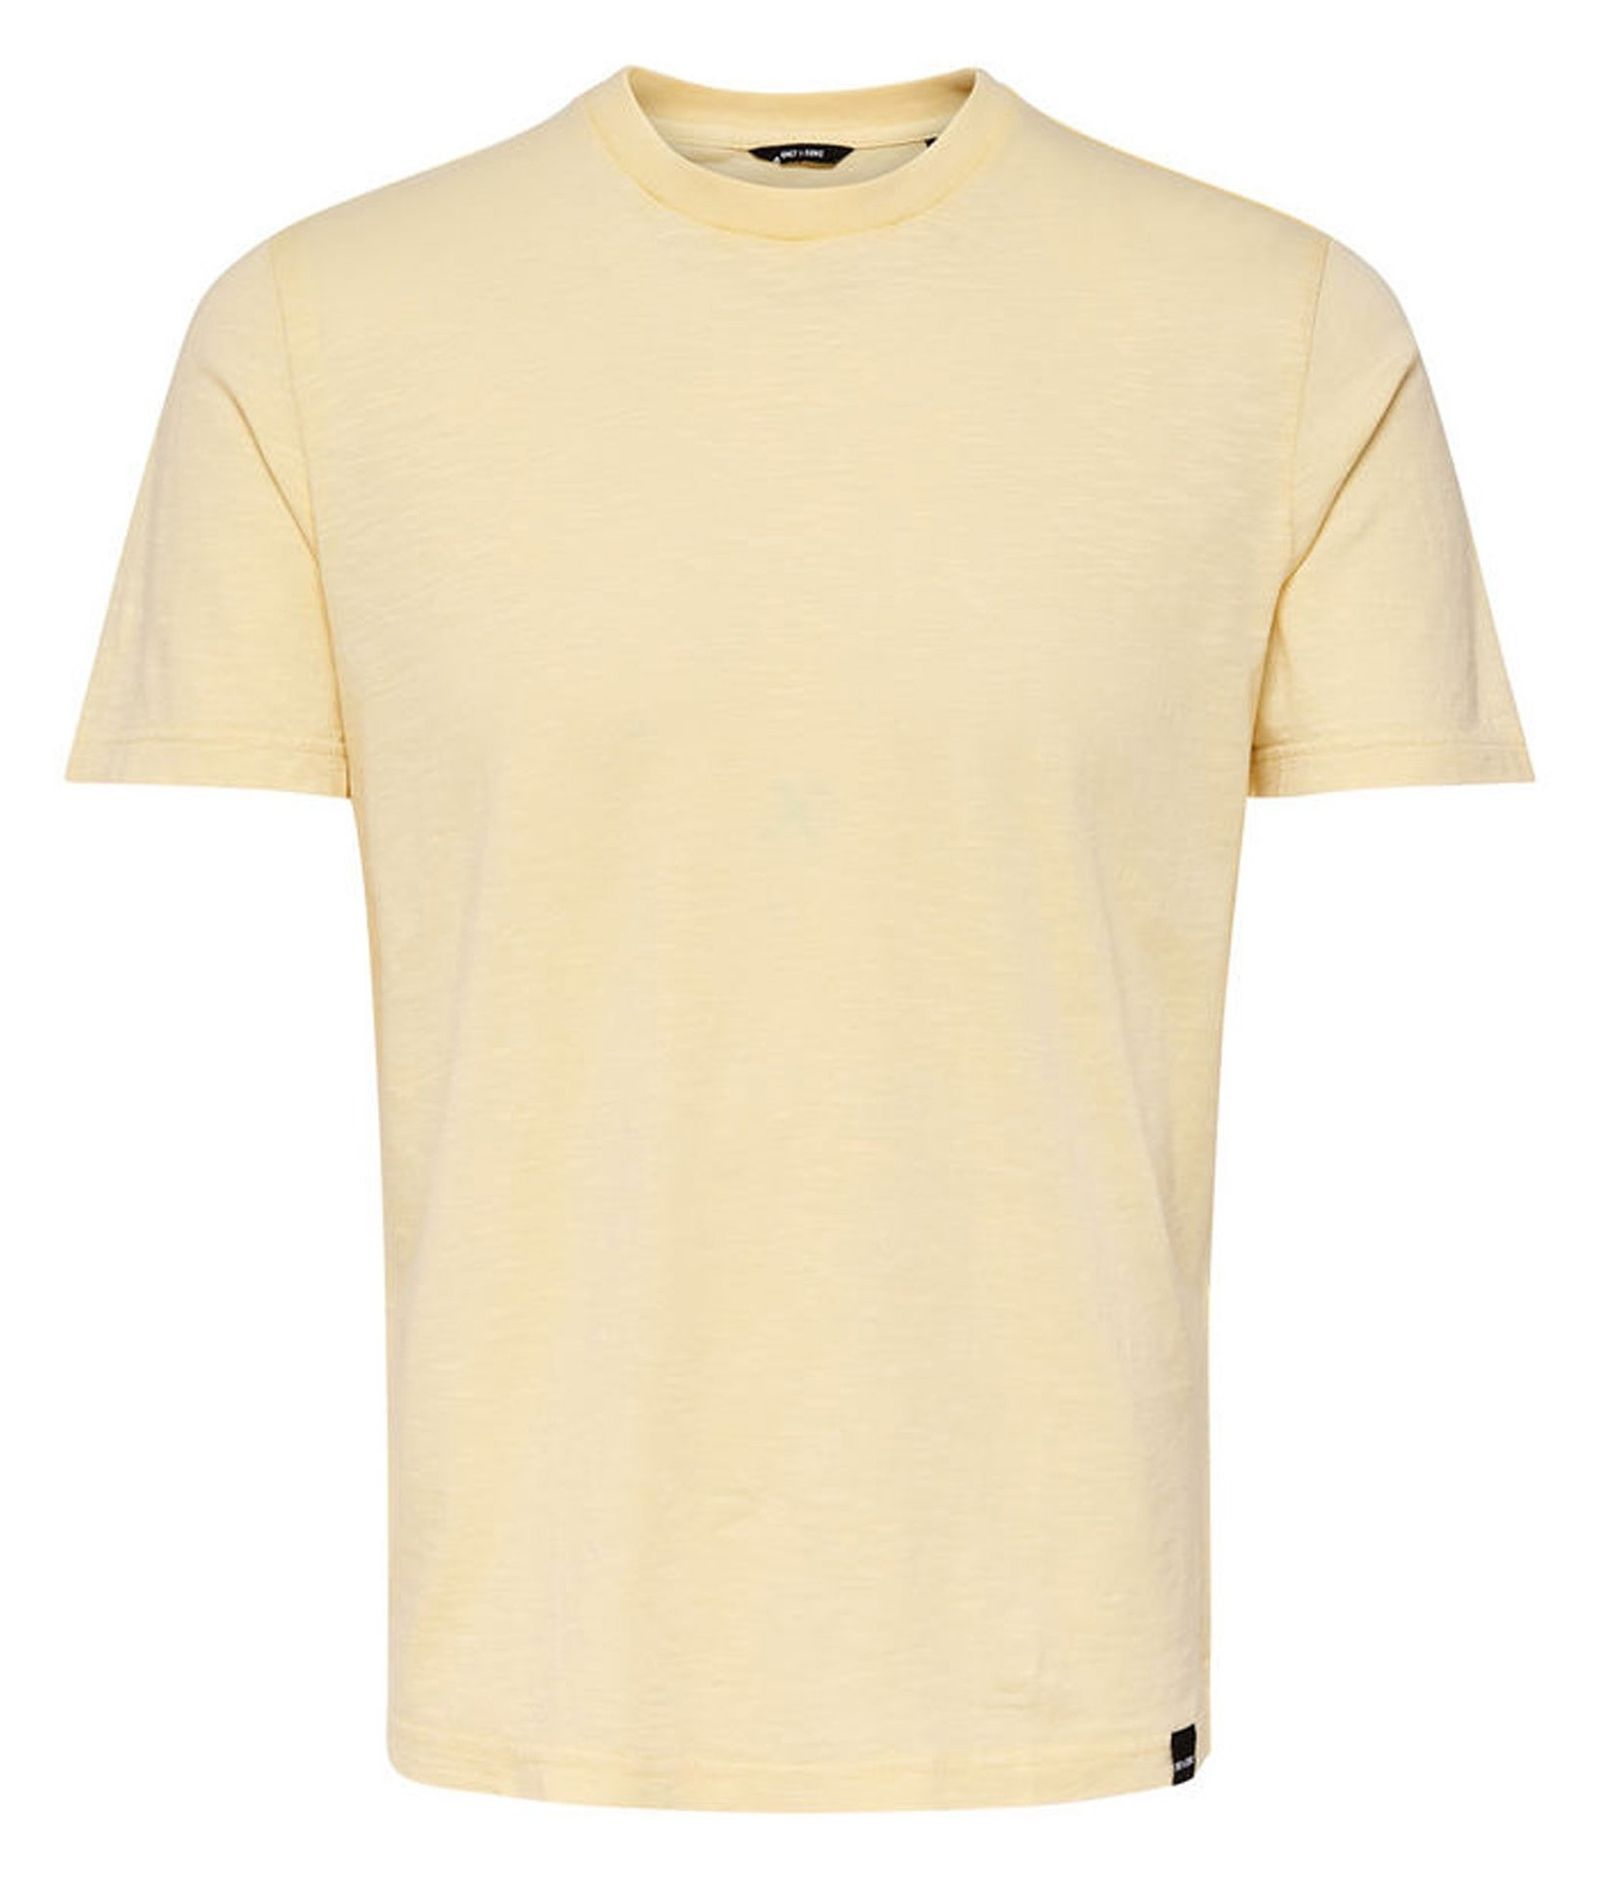 تی شرت نخی یقه گرد مردانه - اونلی اند سانز - زرد - 2